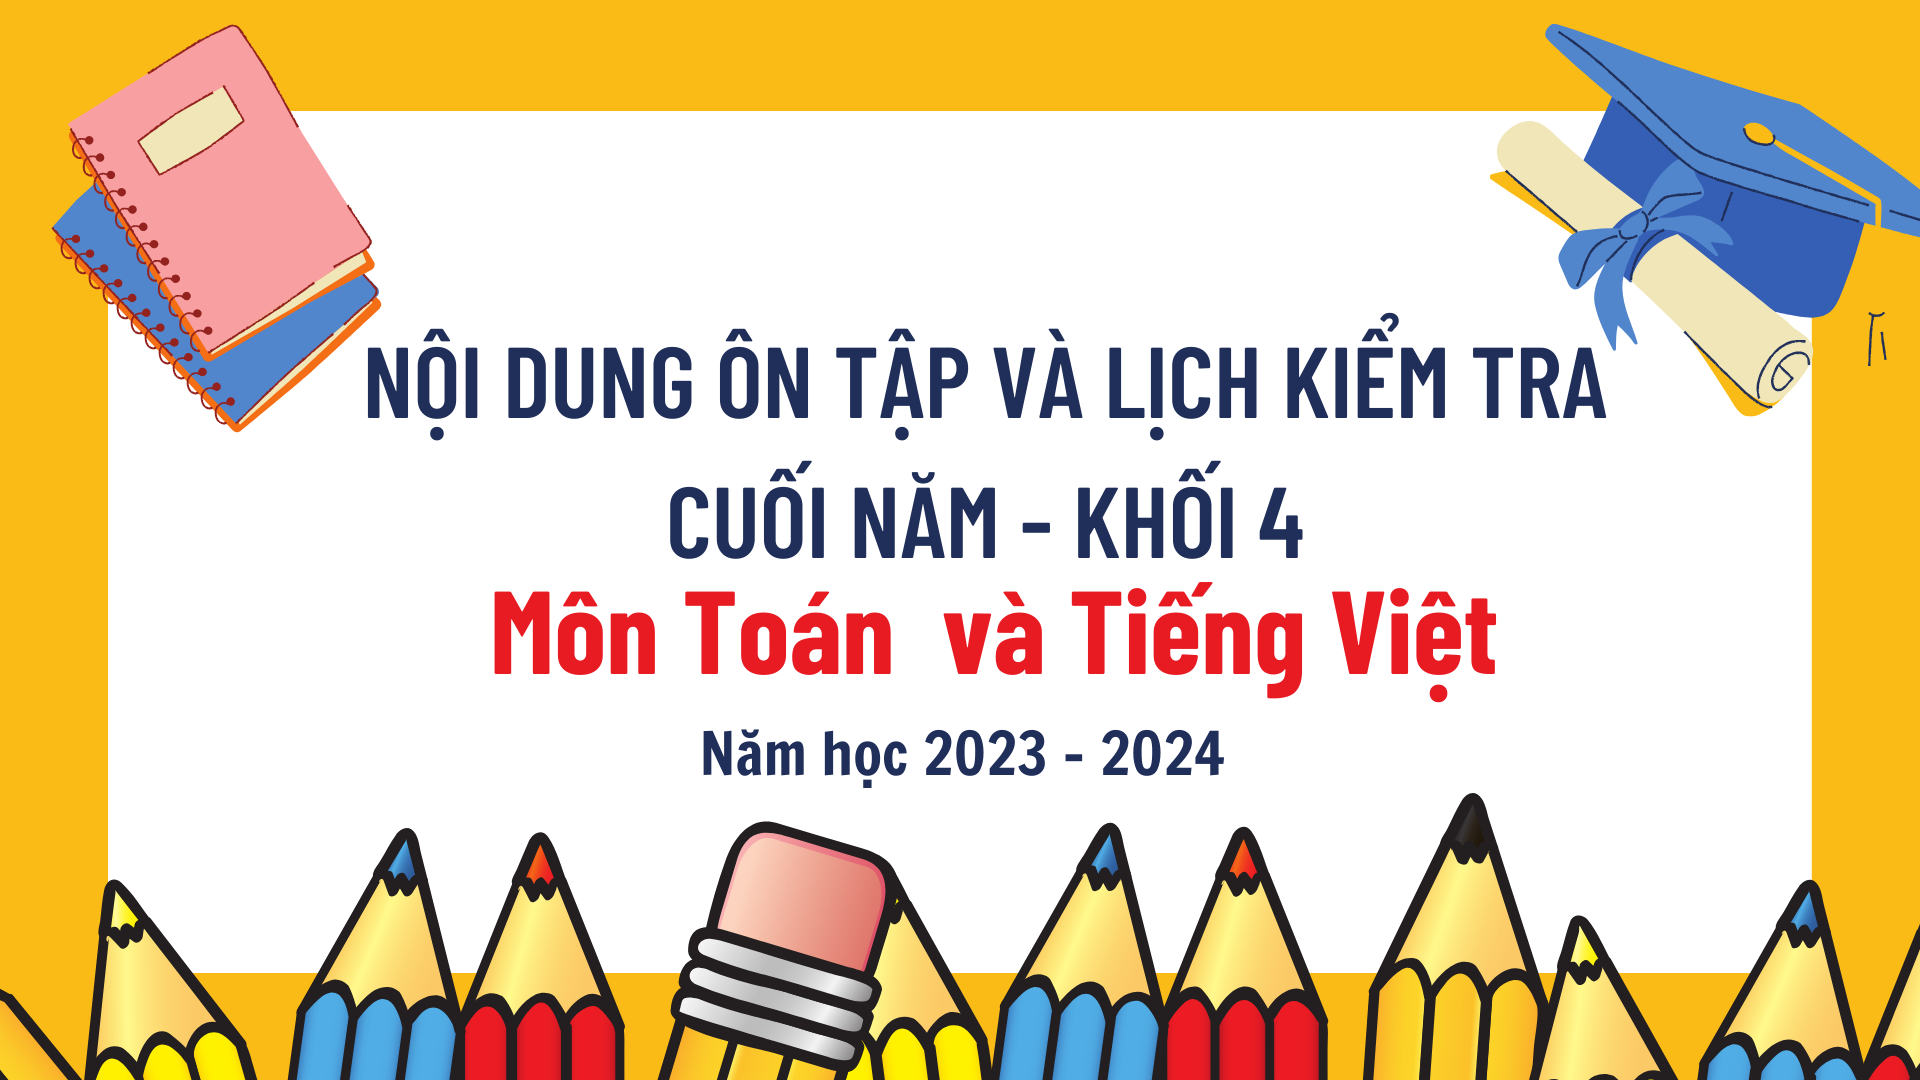 Lịch kiểm tra và nội dung ôn tập cuối năm học 2023-2024 Môn Toán và Tiếng Việt - Lớp 4